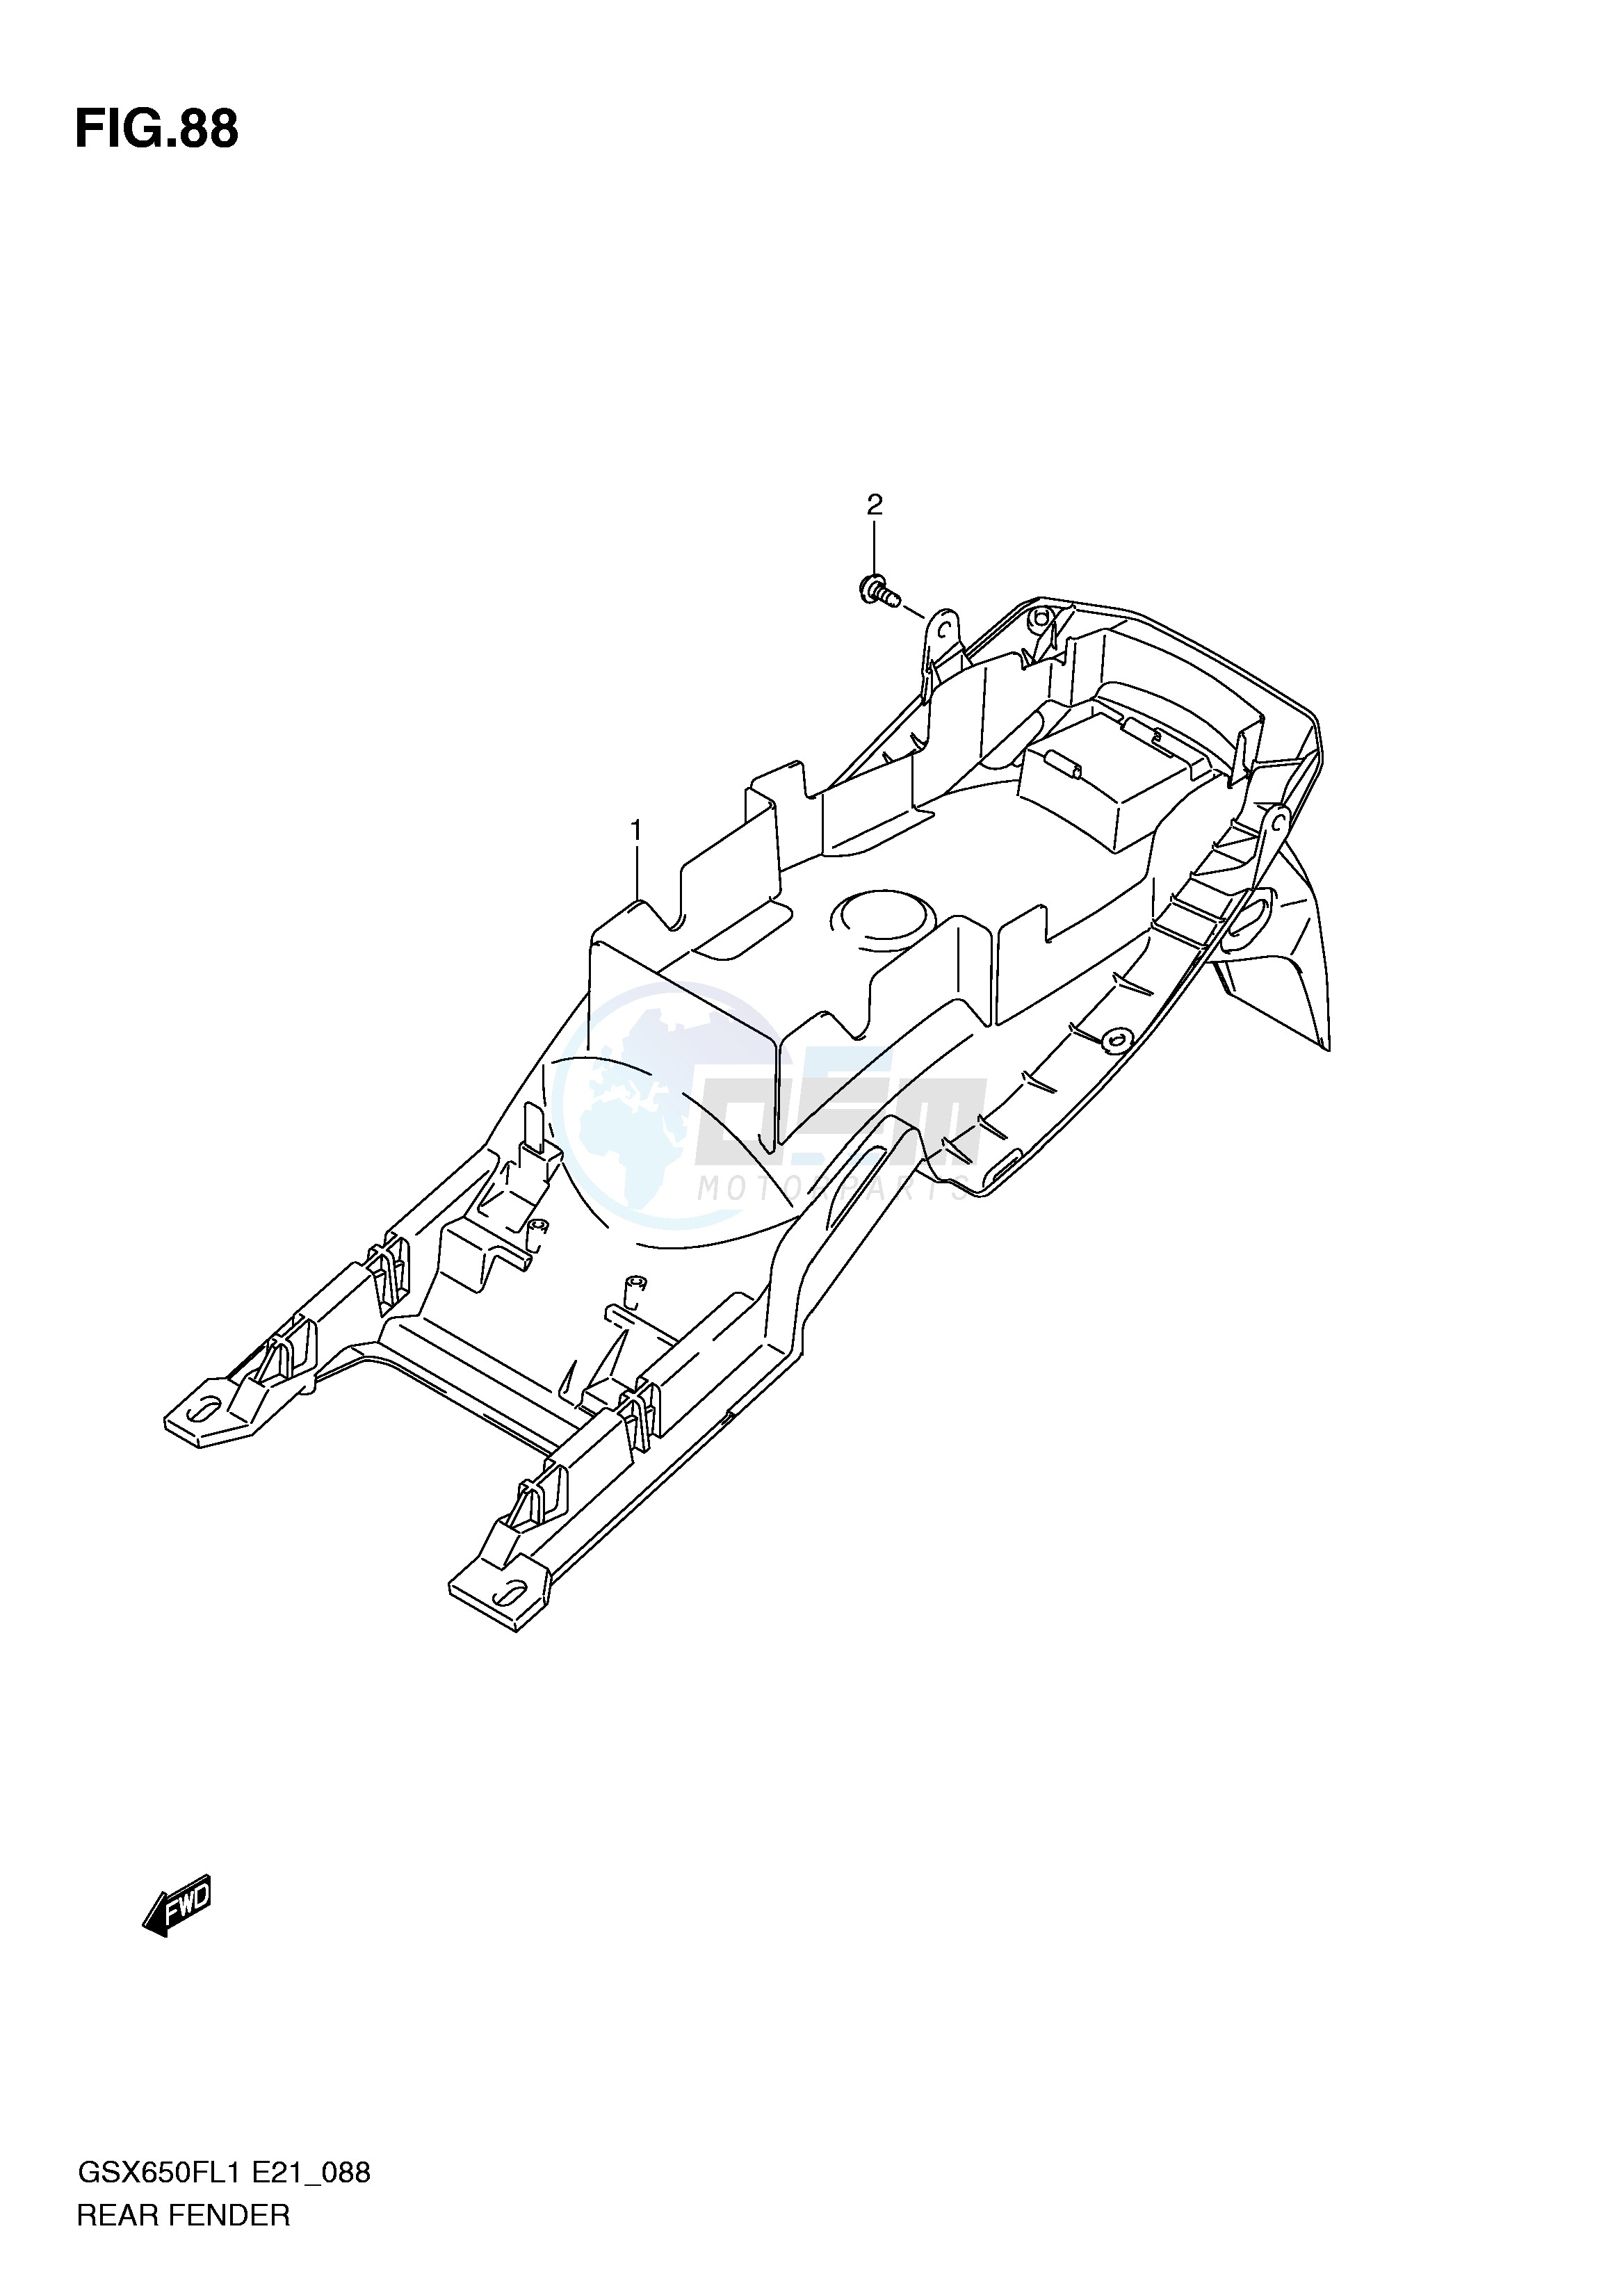 REAR FENDER (GSX650FUAL1 E21) blueprint